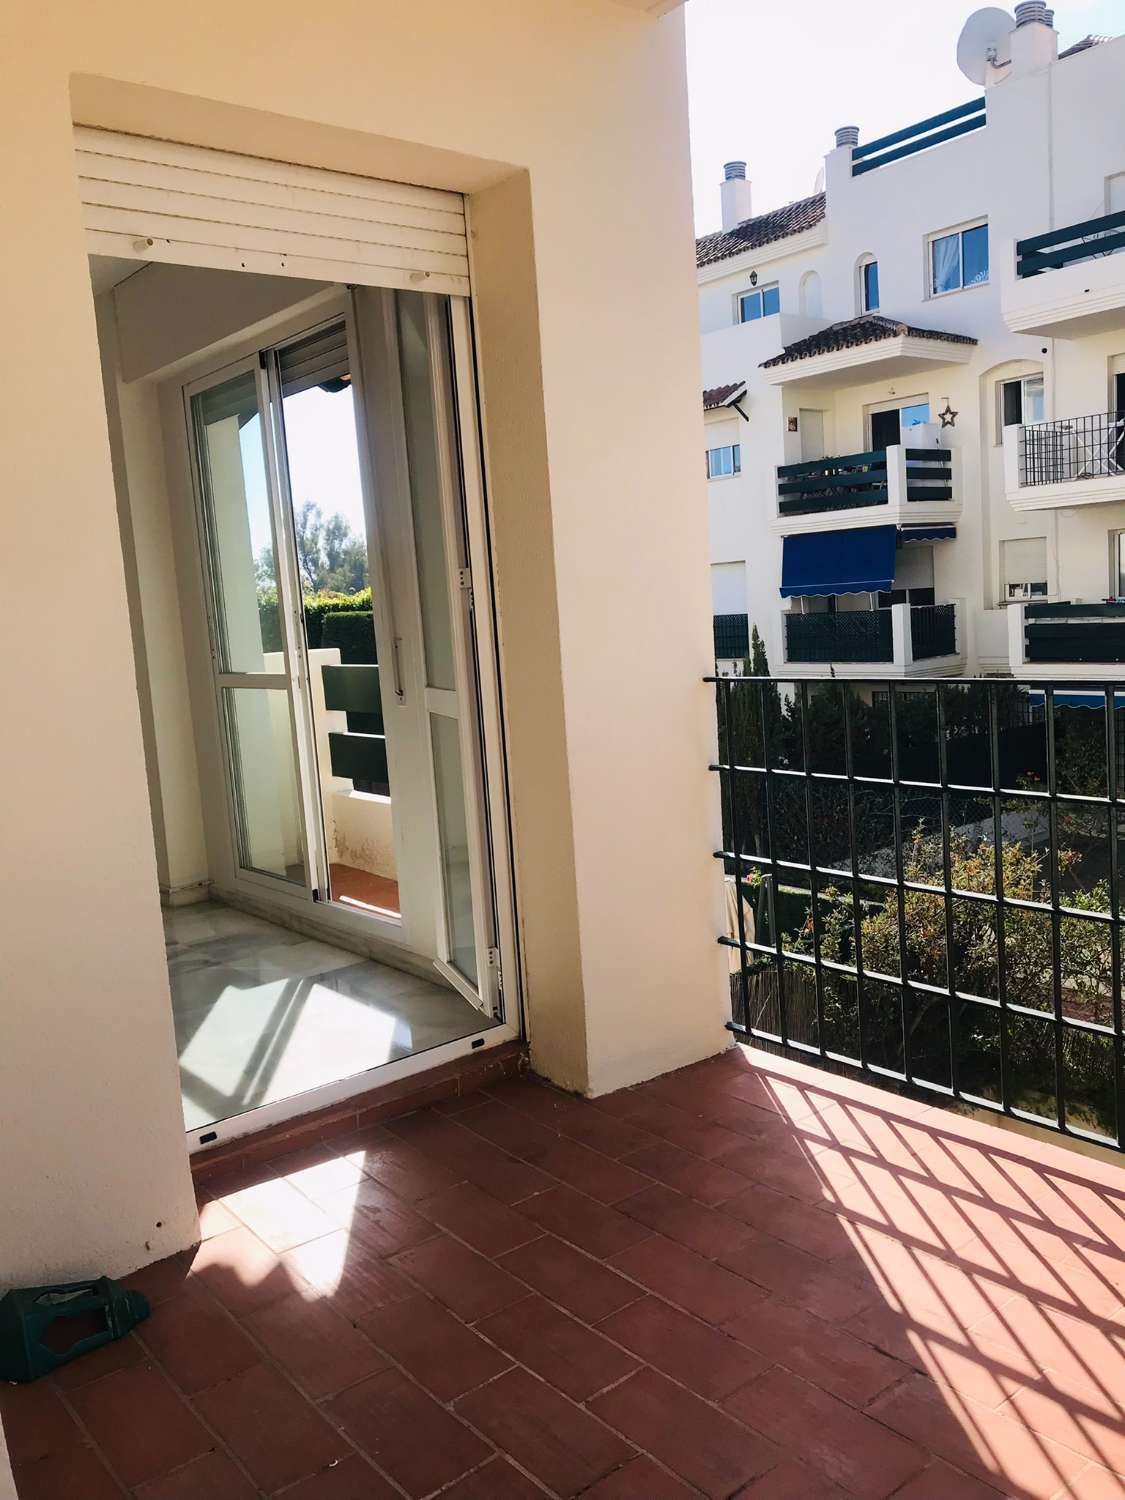 Grazioso appartamento in vendita. Posizione comoda vicino a Puerto Banus, Marbella.